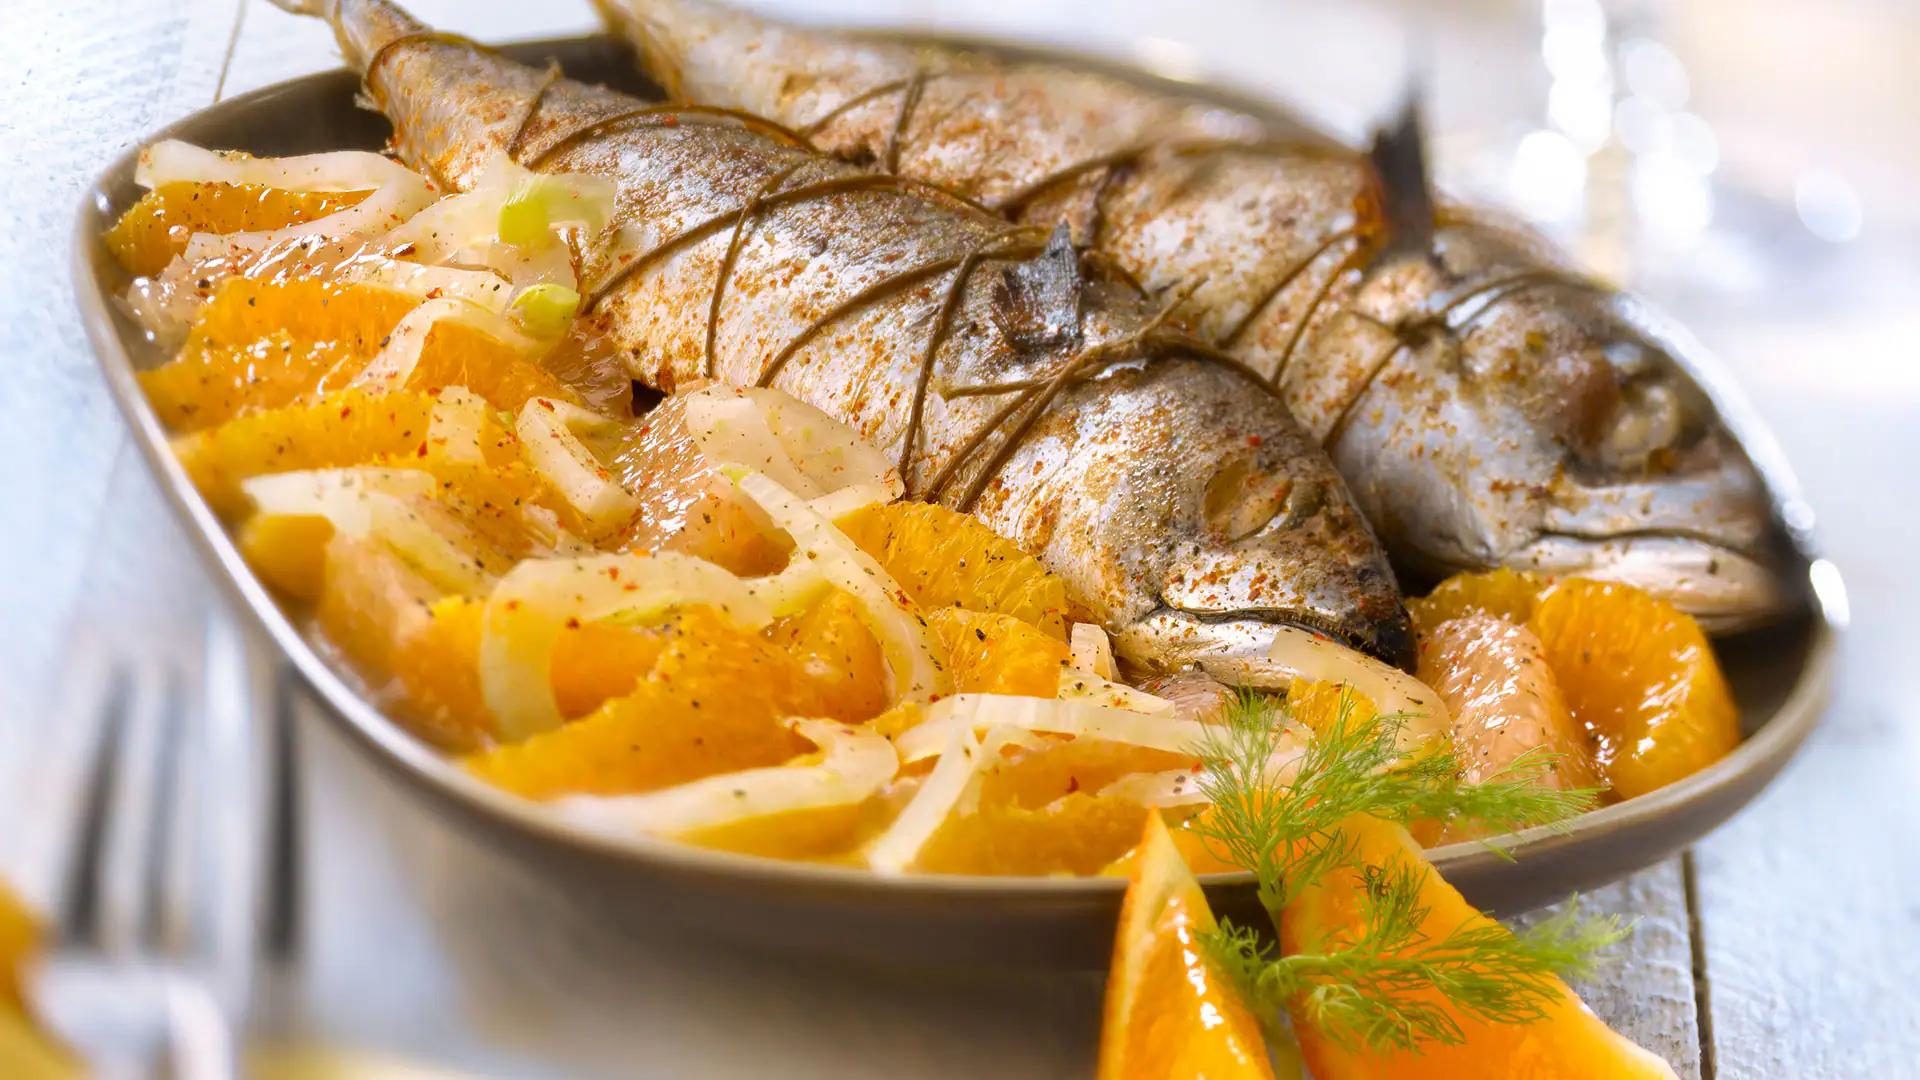 pescados sanos para cenar - Qué pescados se pueden comer en una dieta